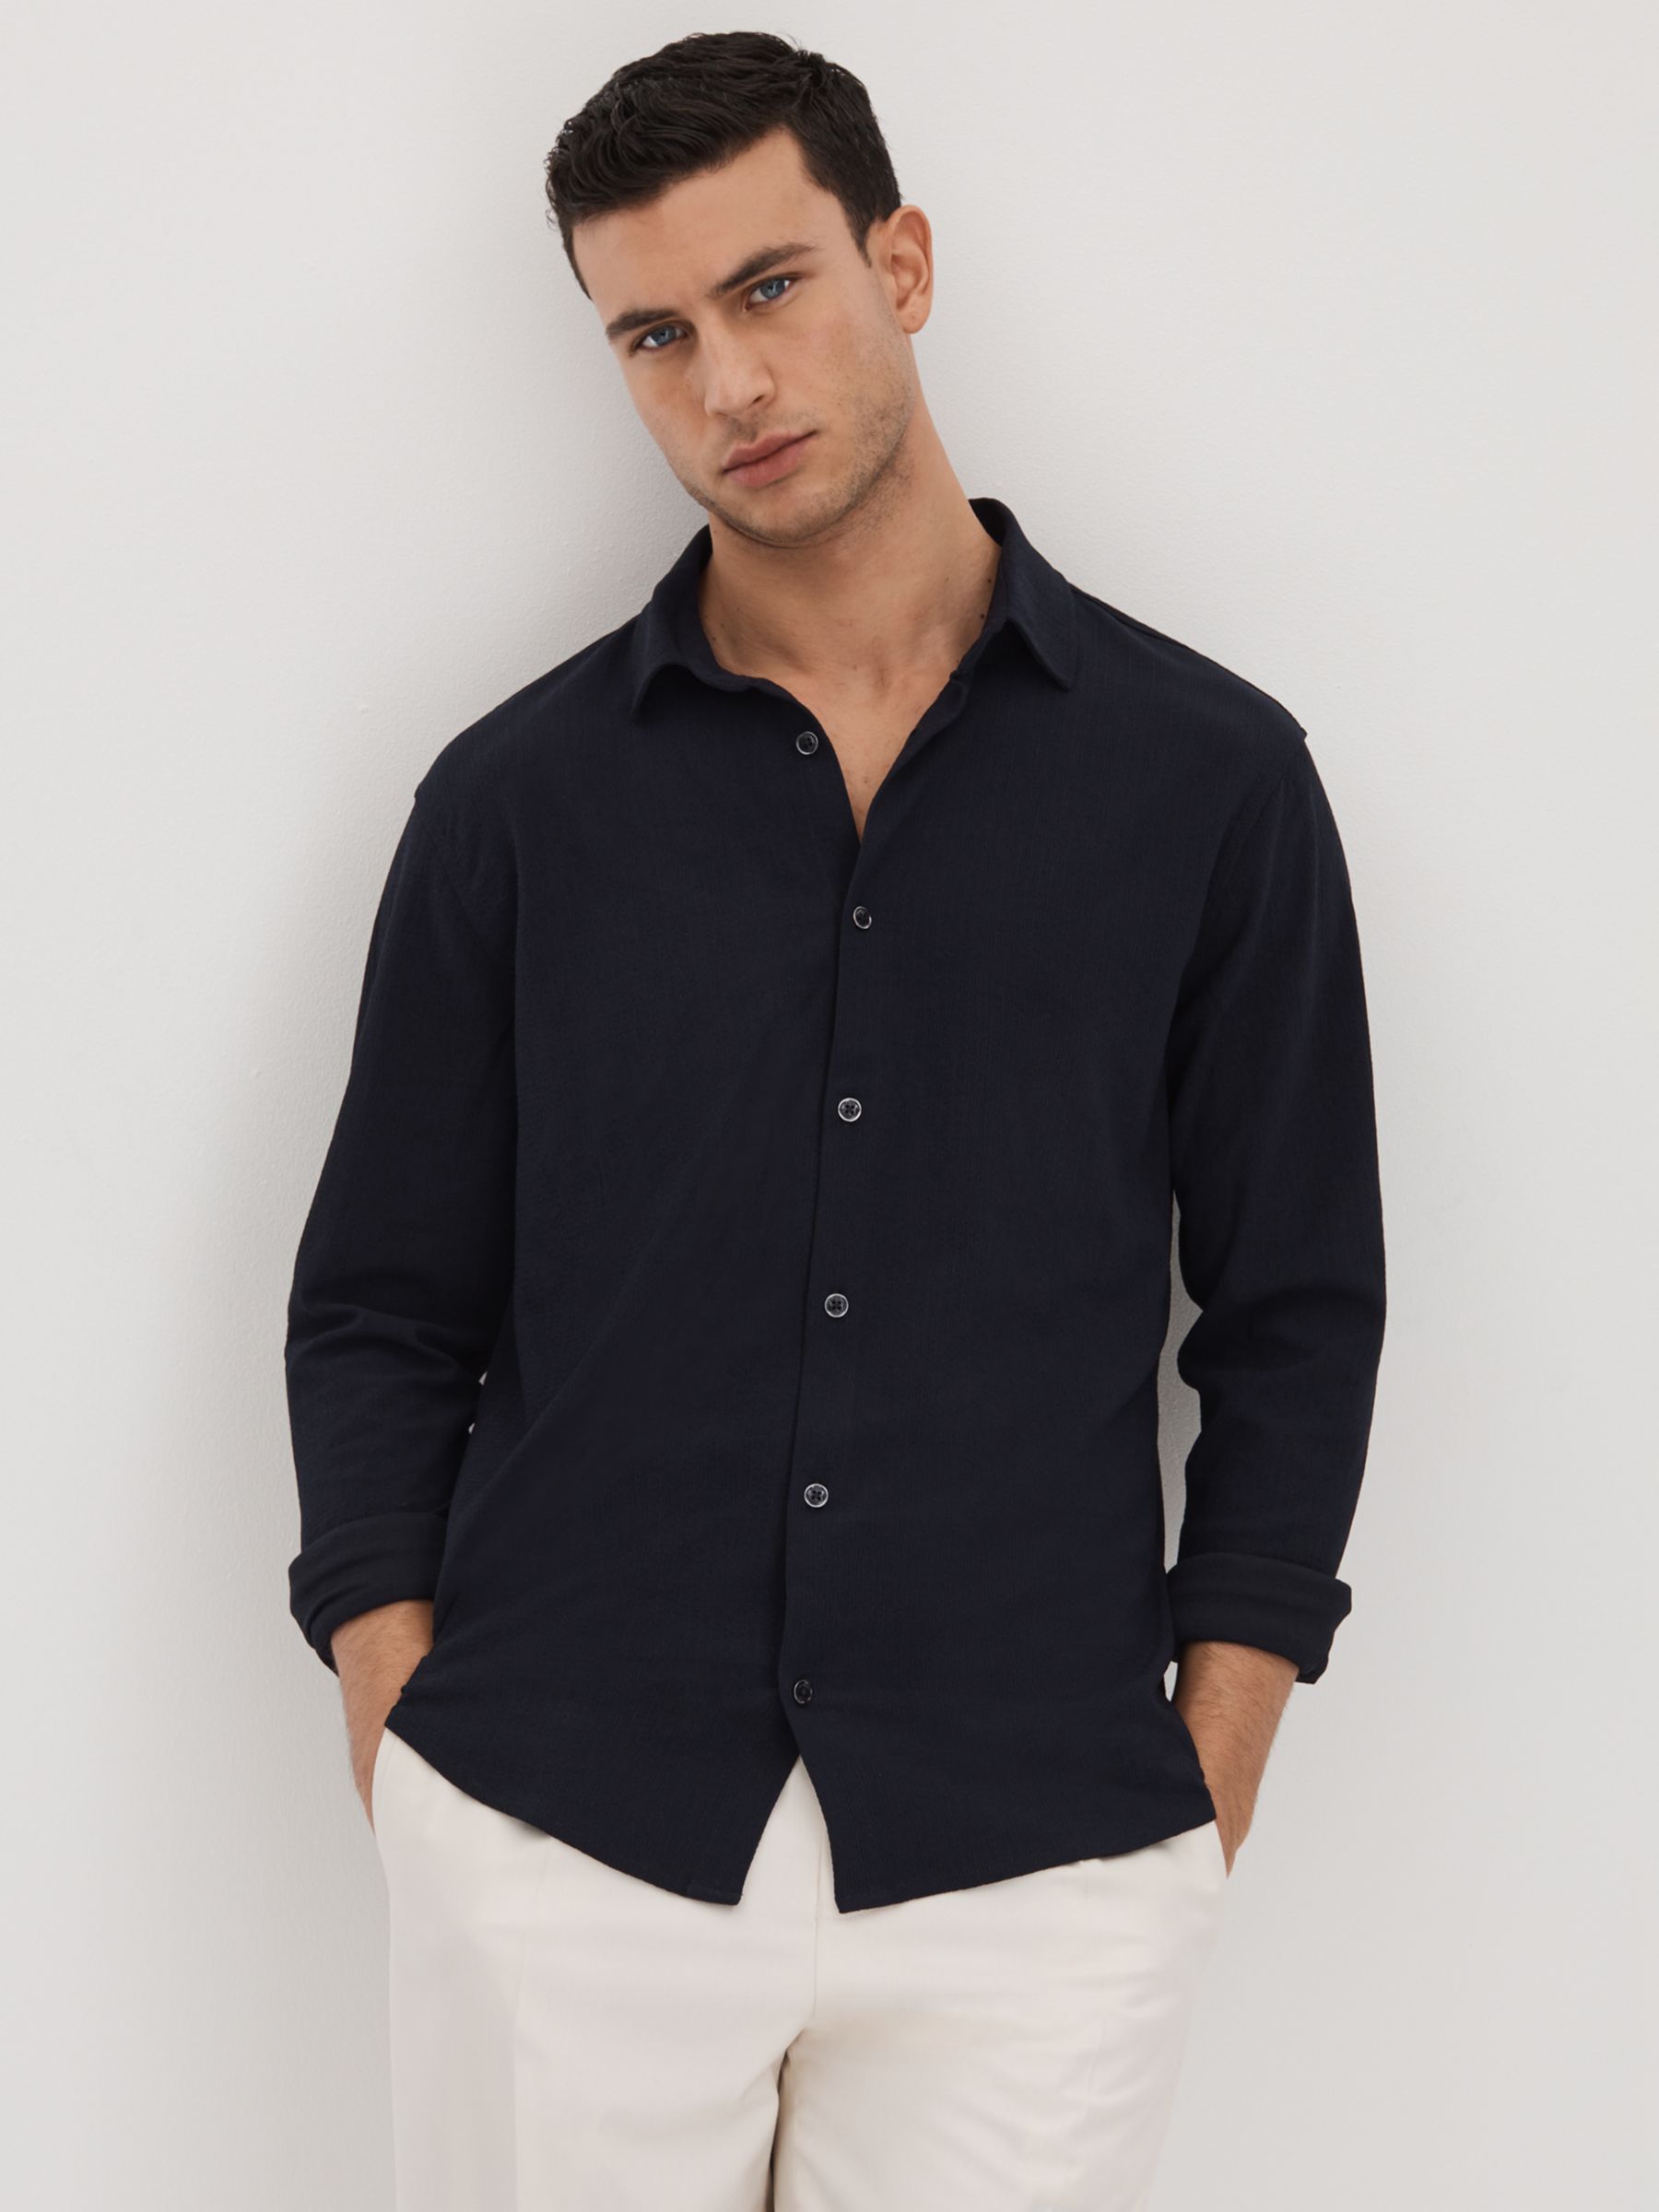 Reiss Corsica Long Sleeve Textured Shirt, Navy, S